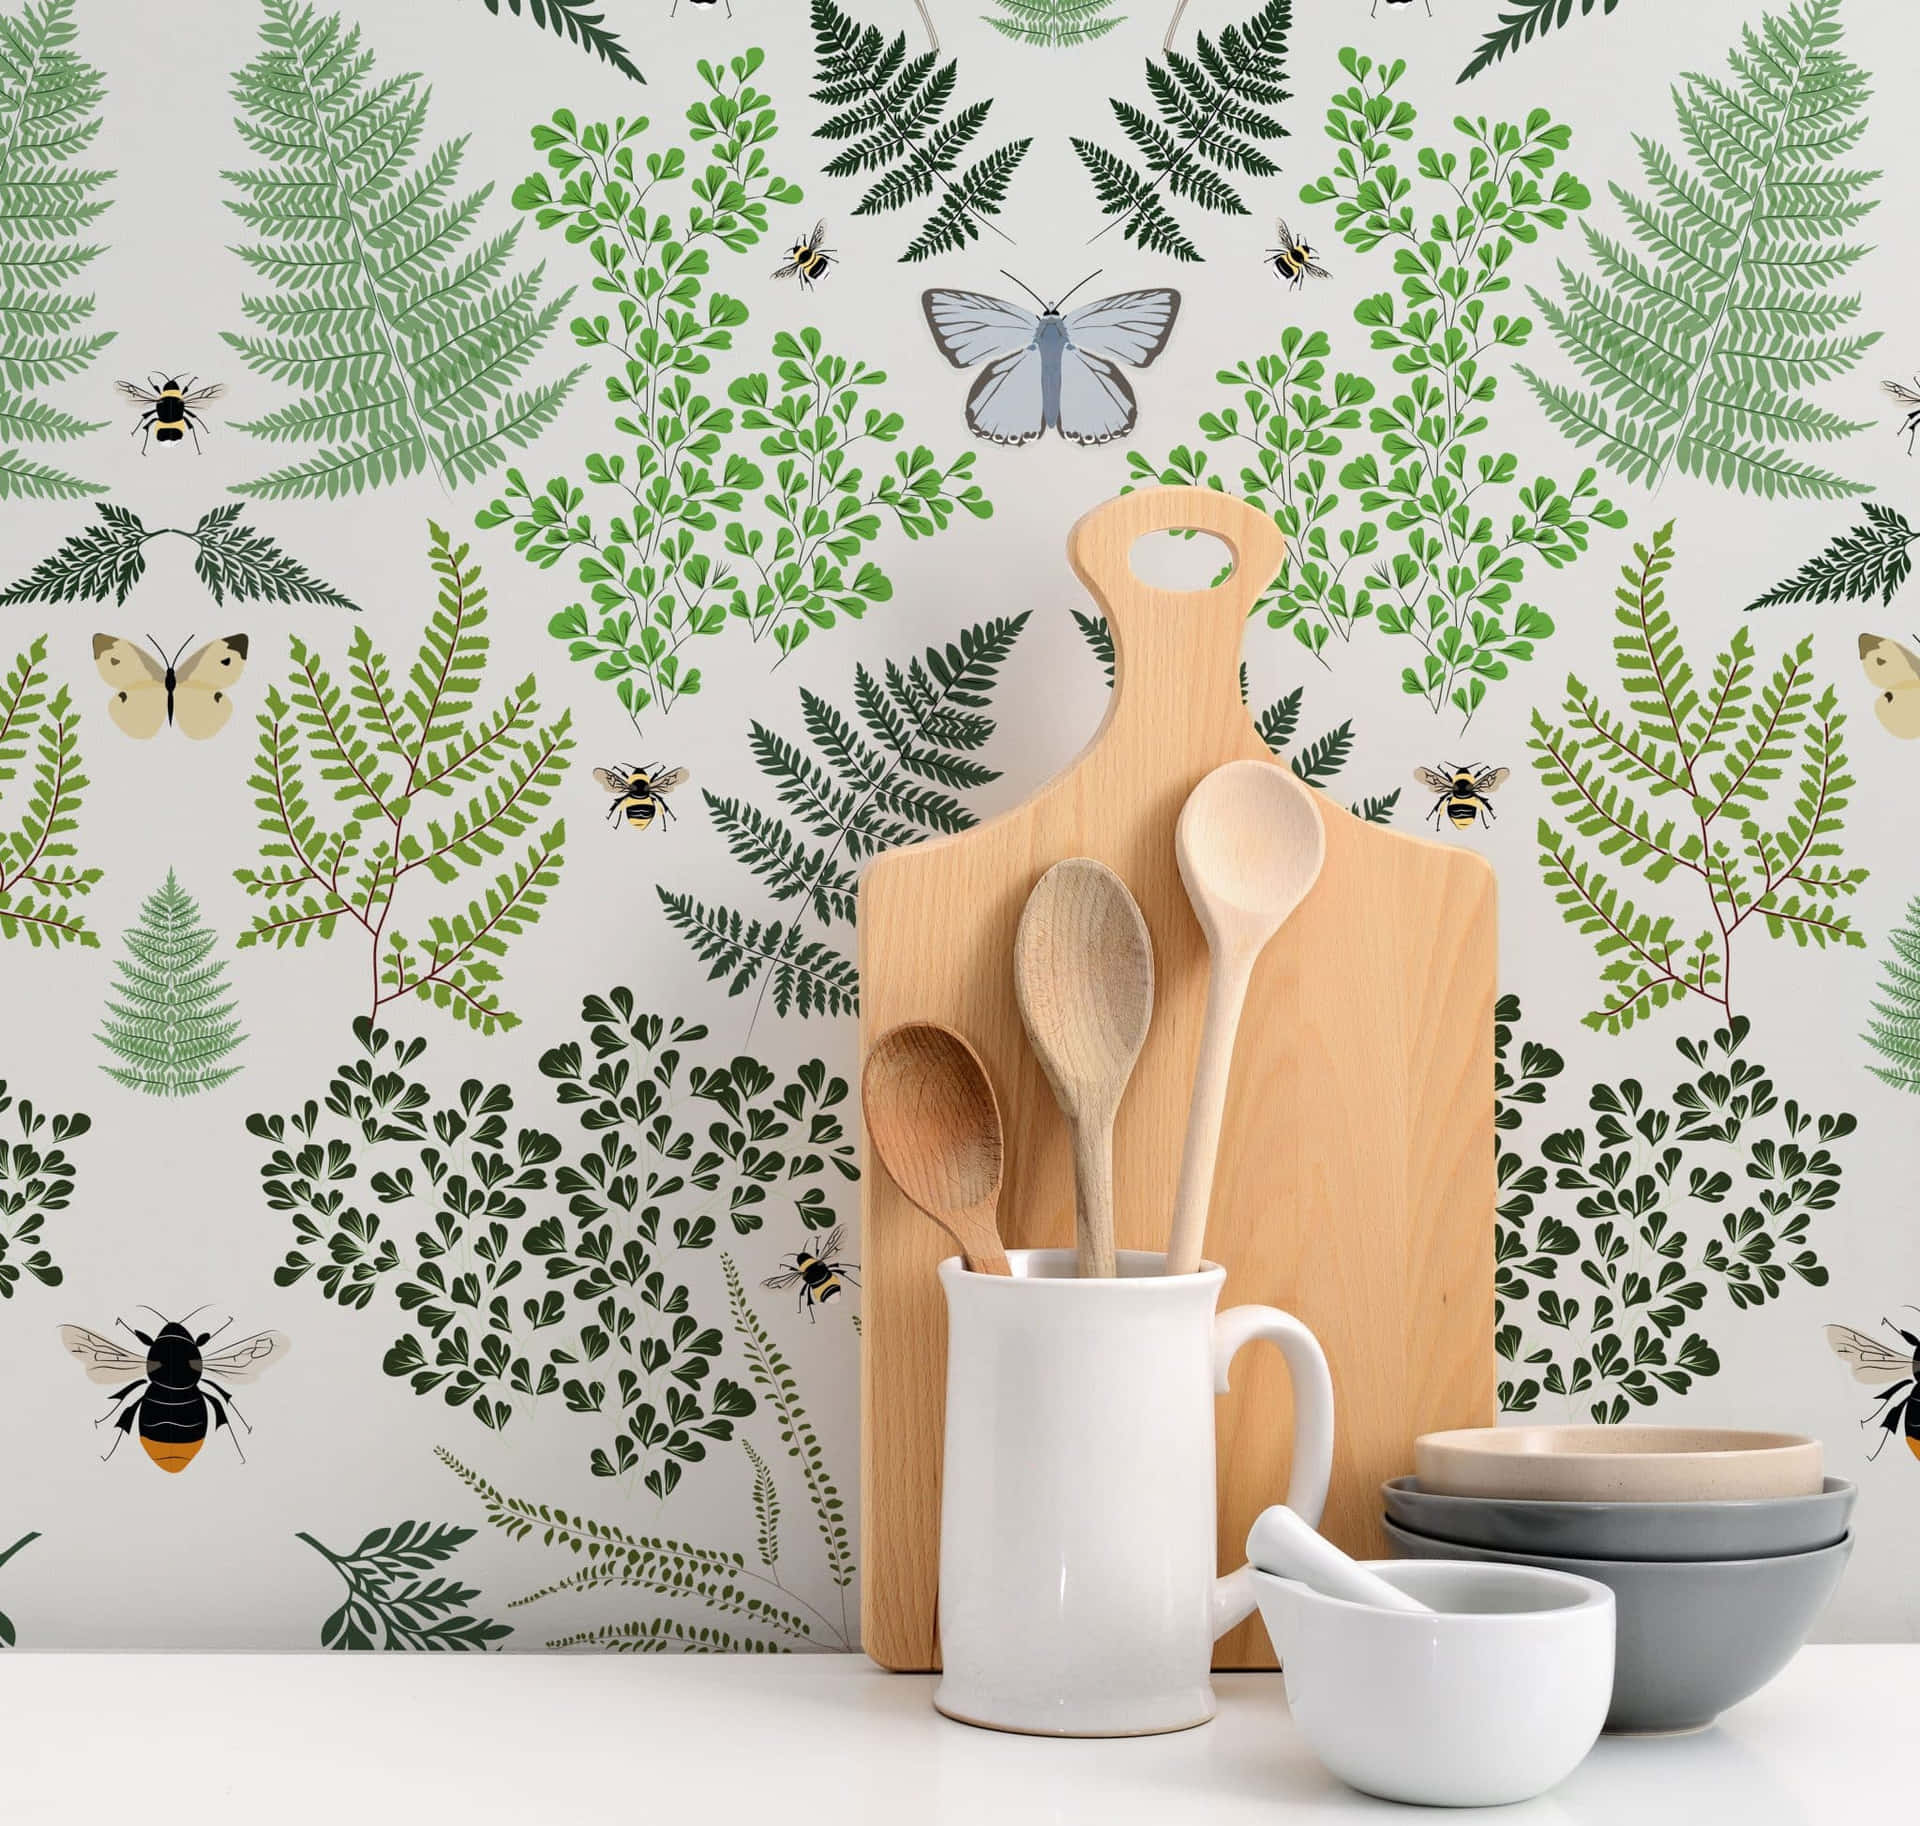 Kitchen Utensilsand Nature Pattern Wallpaper Wallpaper